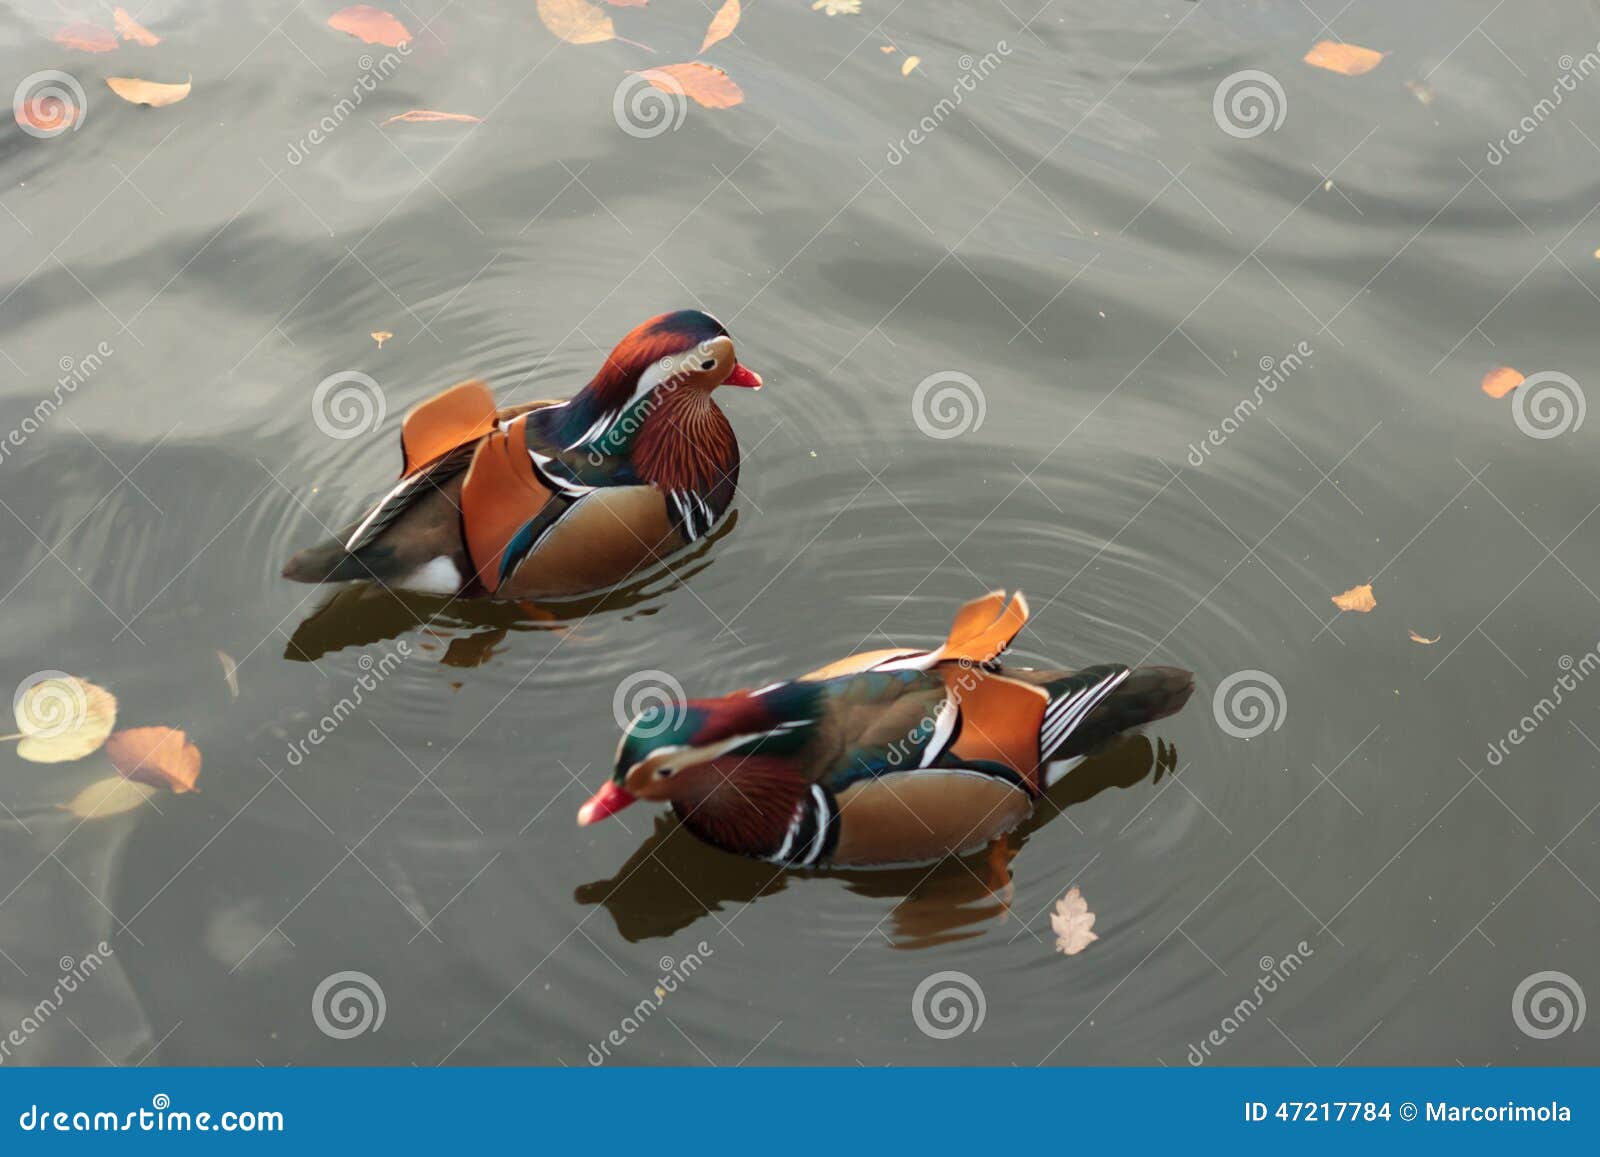 mandarina ducks